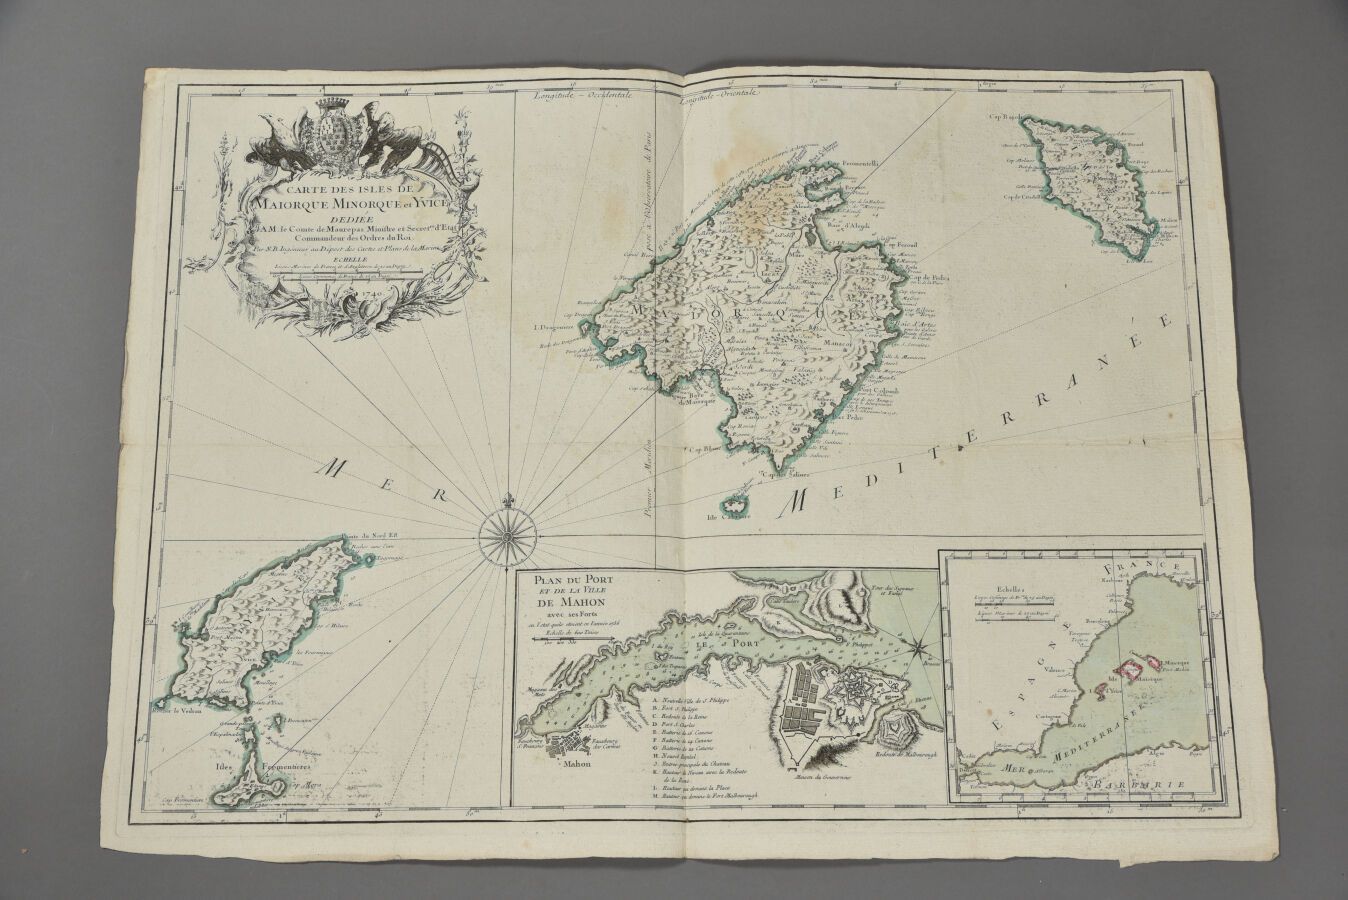 Null N.B.，工程师在地图和计划库。 
巴利阿里群岛（马约卡和米诺卡）地图。1740. 
双开本。 
有些缺陷（折叠的痕迹，灰尘等）。